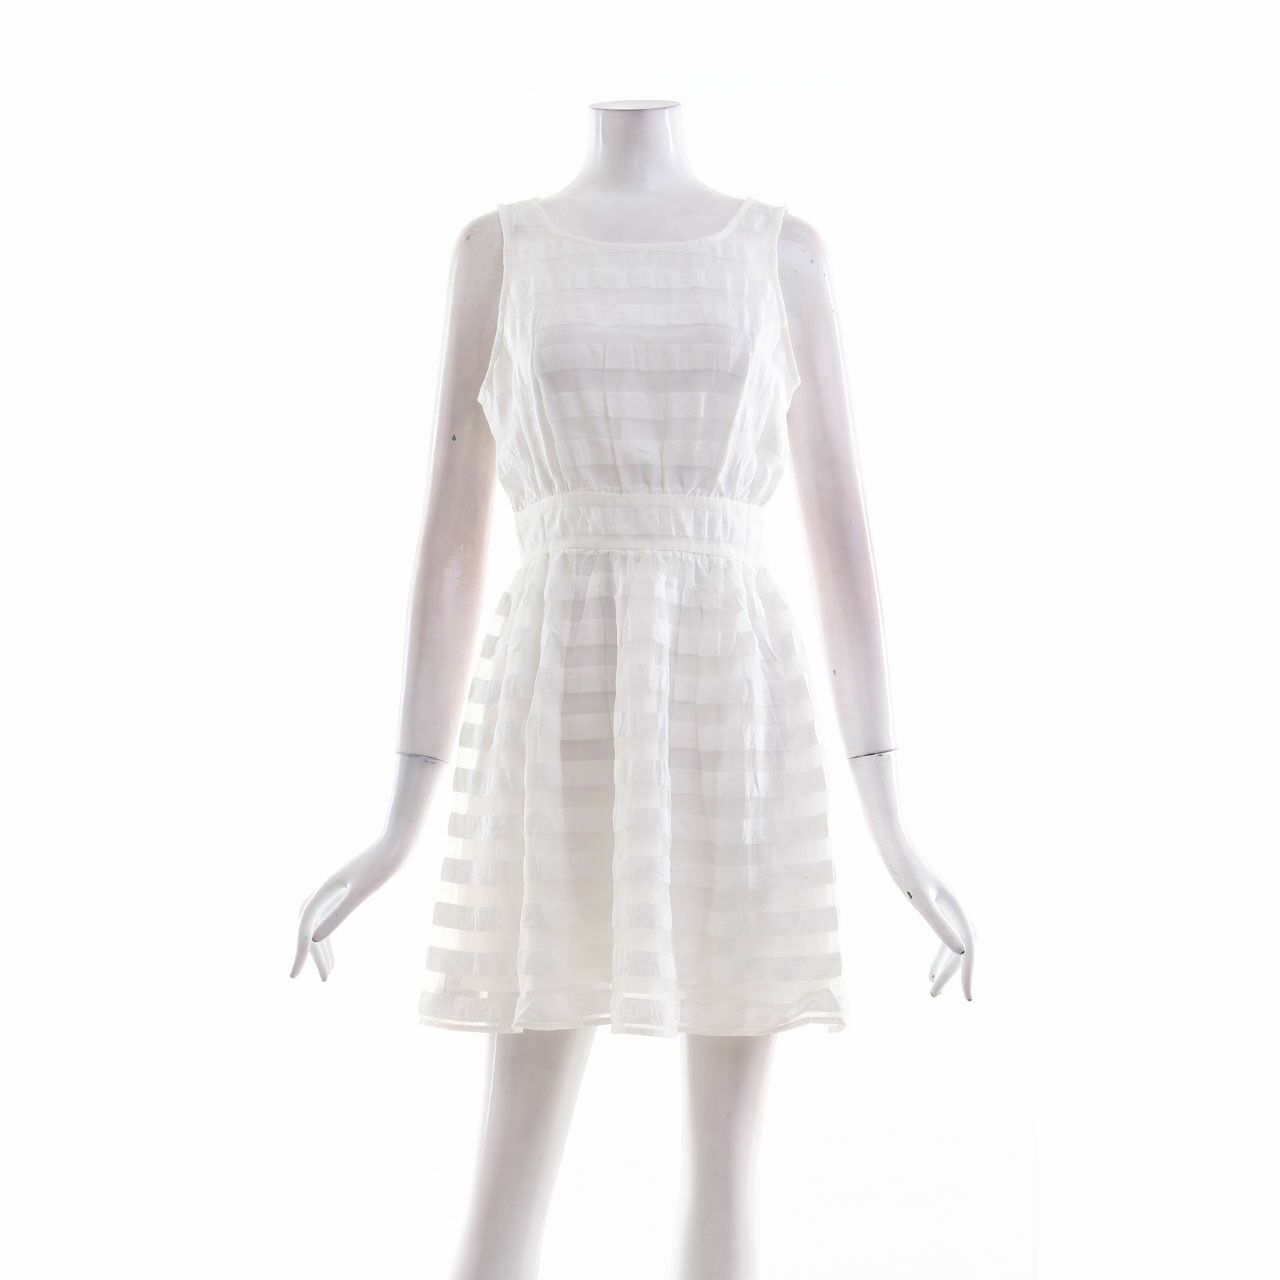 Forever 21 White Mini Dress